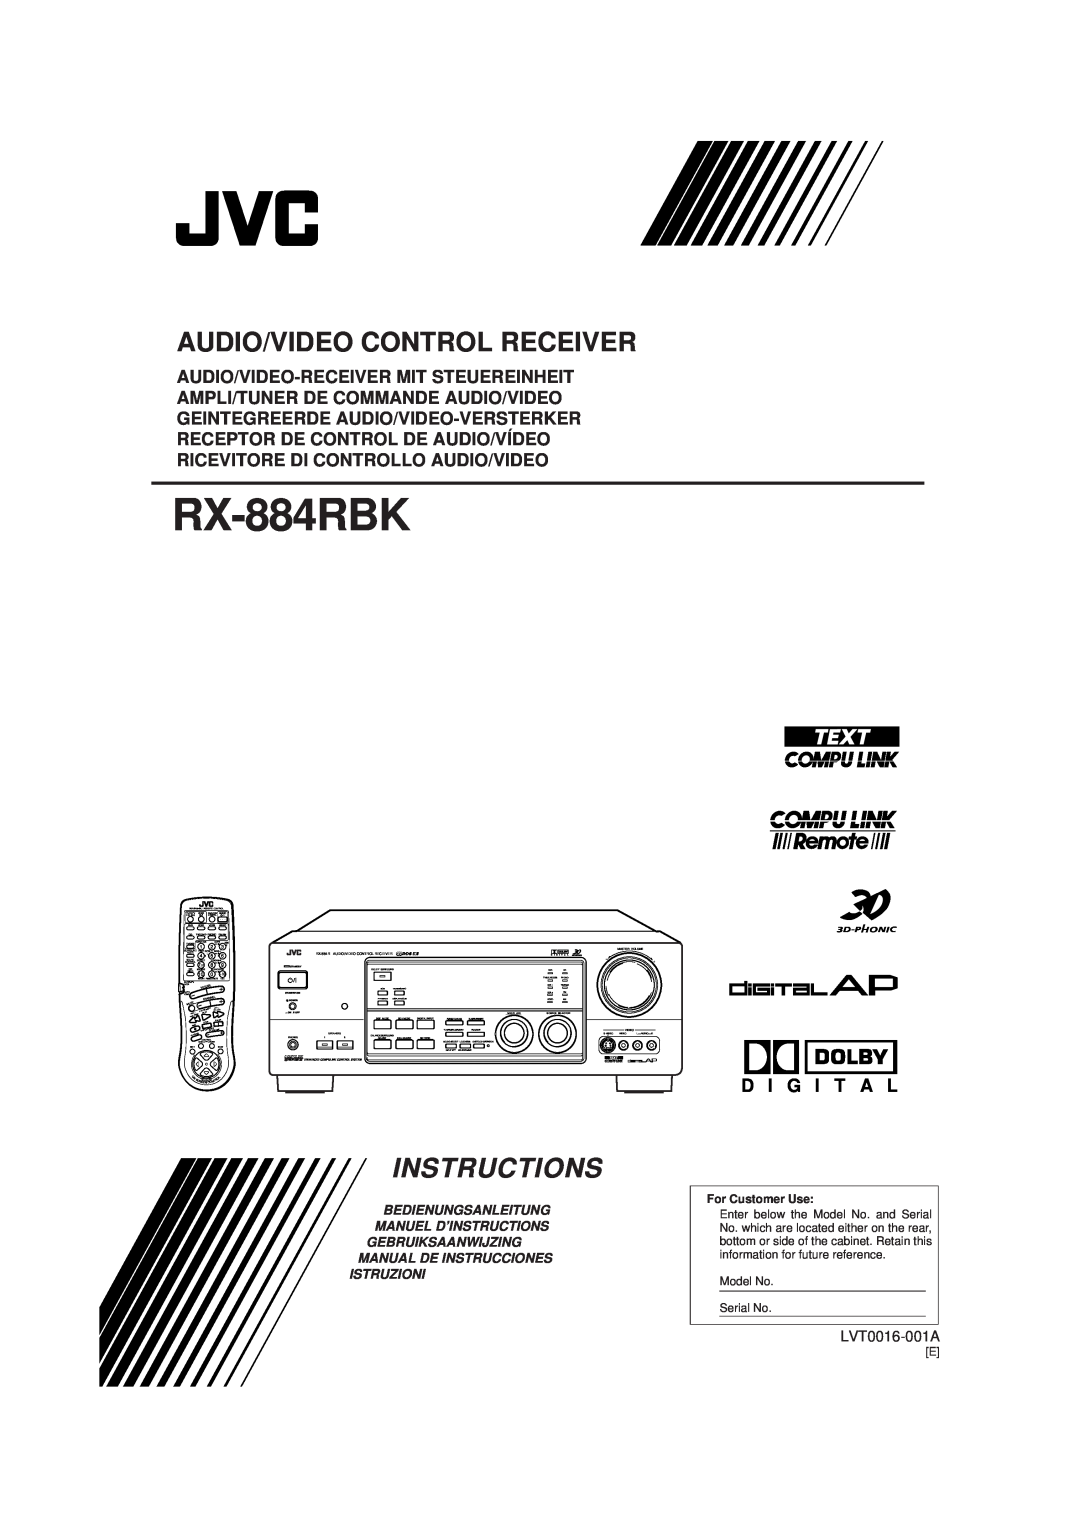 JVC RX-884RBK manual D I G I T A L, Audio/Video Control Receiver, Instructions, LVT0016-001A, Istruzioni 